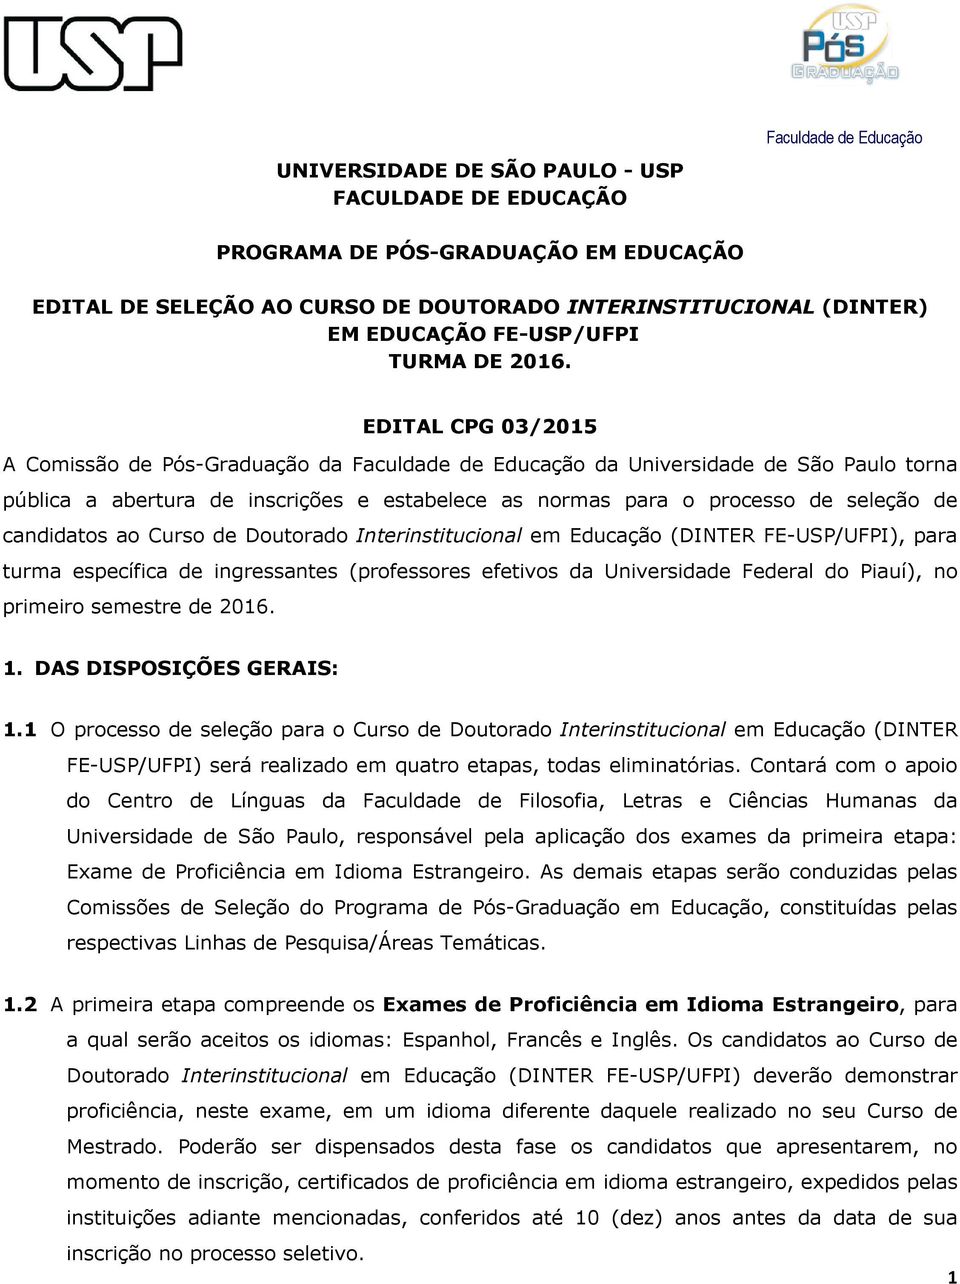 EDITAL CPG 03/2015 A Comissão de Pós-Graduação da Faculdade de Educação da Universidade de São Paulo torna pública a abertura de inscrições e estabelece as normas para o processo de seleção de